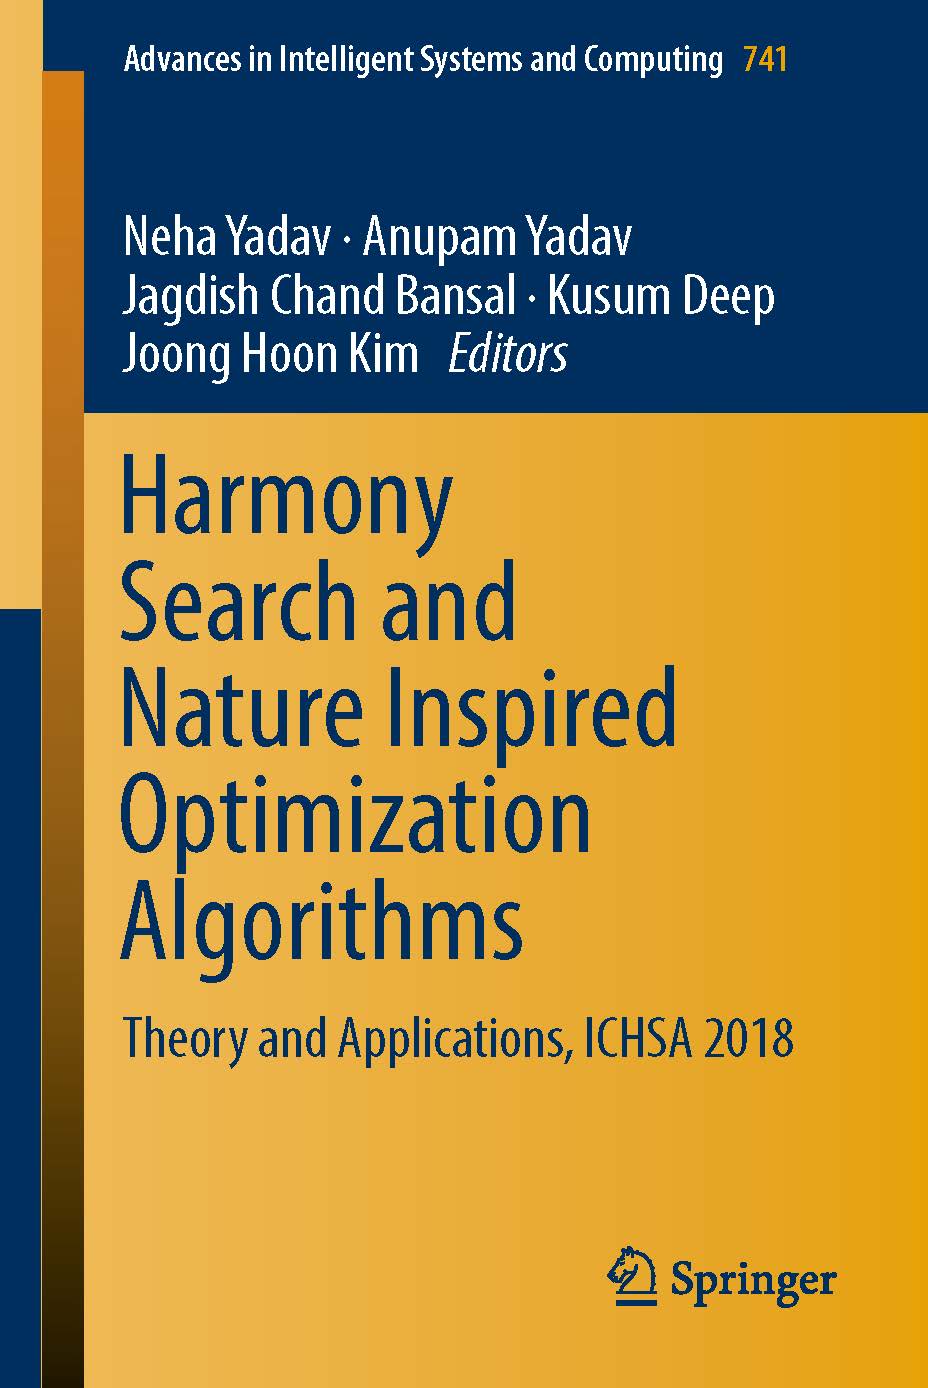 页面提取自－2019_Book_Harmony Search and Nature Inspired Optimization Algorithms.jpg